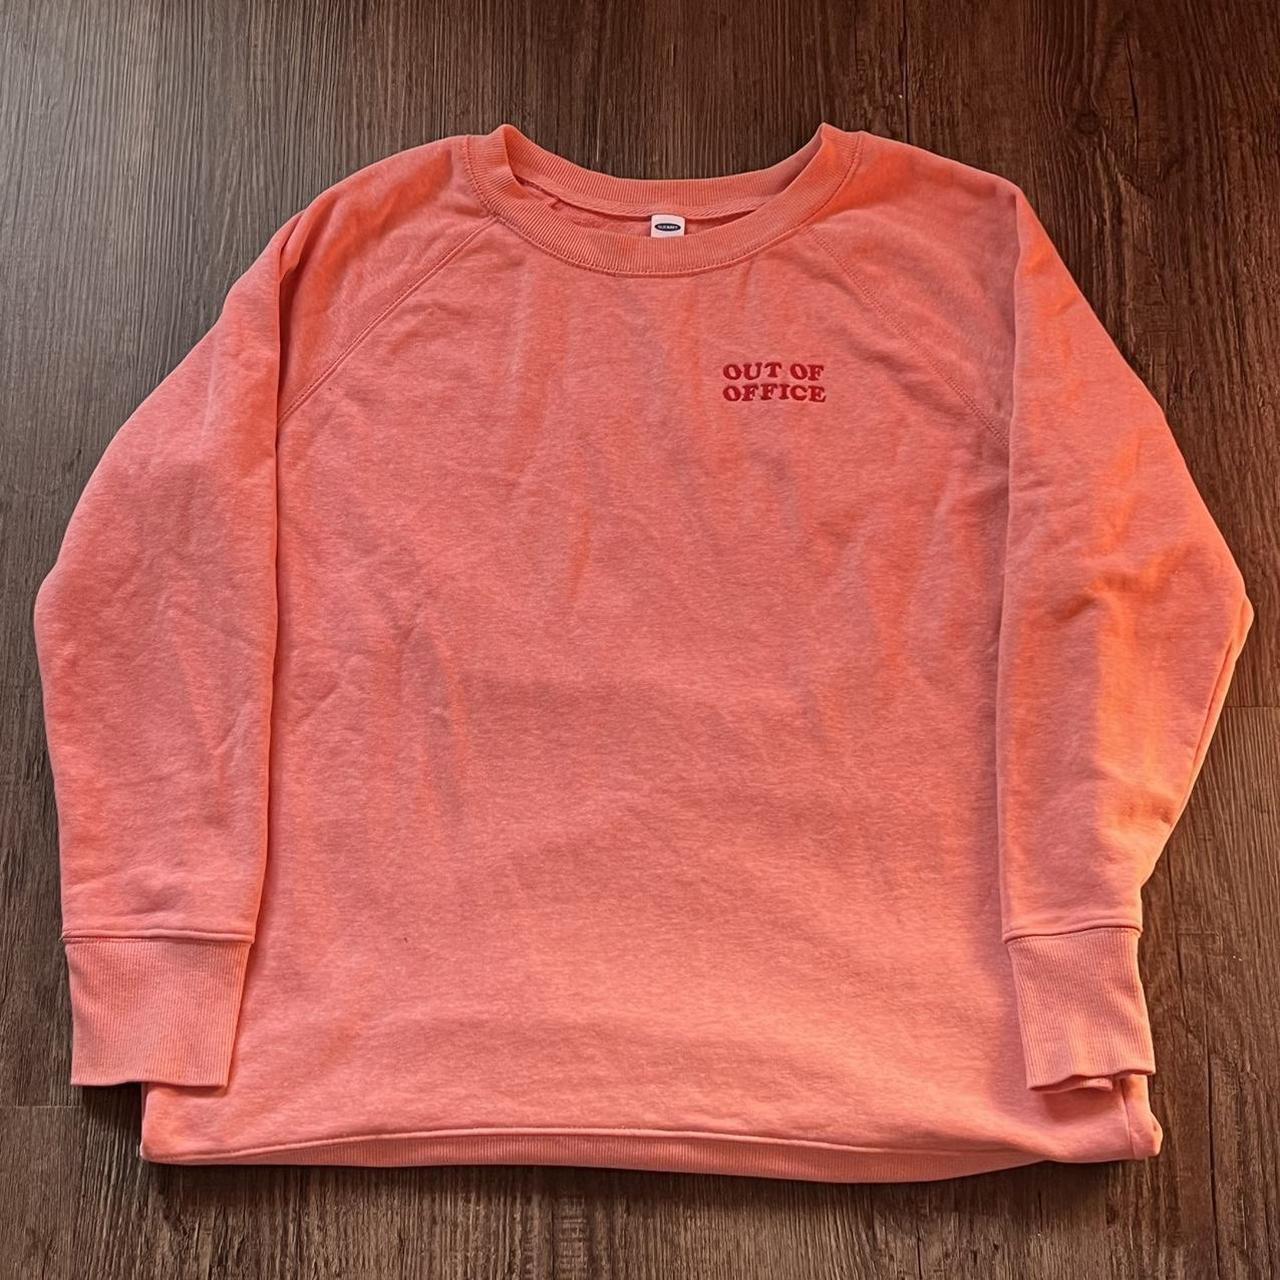 pink lightweight sweatshirt, - size medium , - in